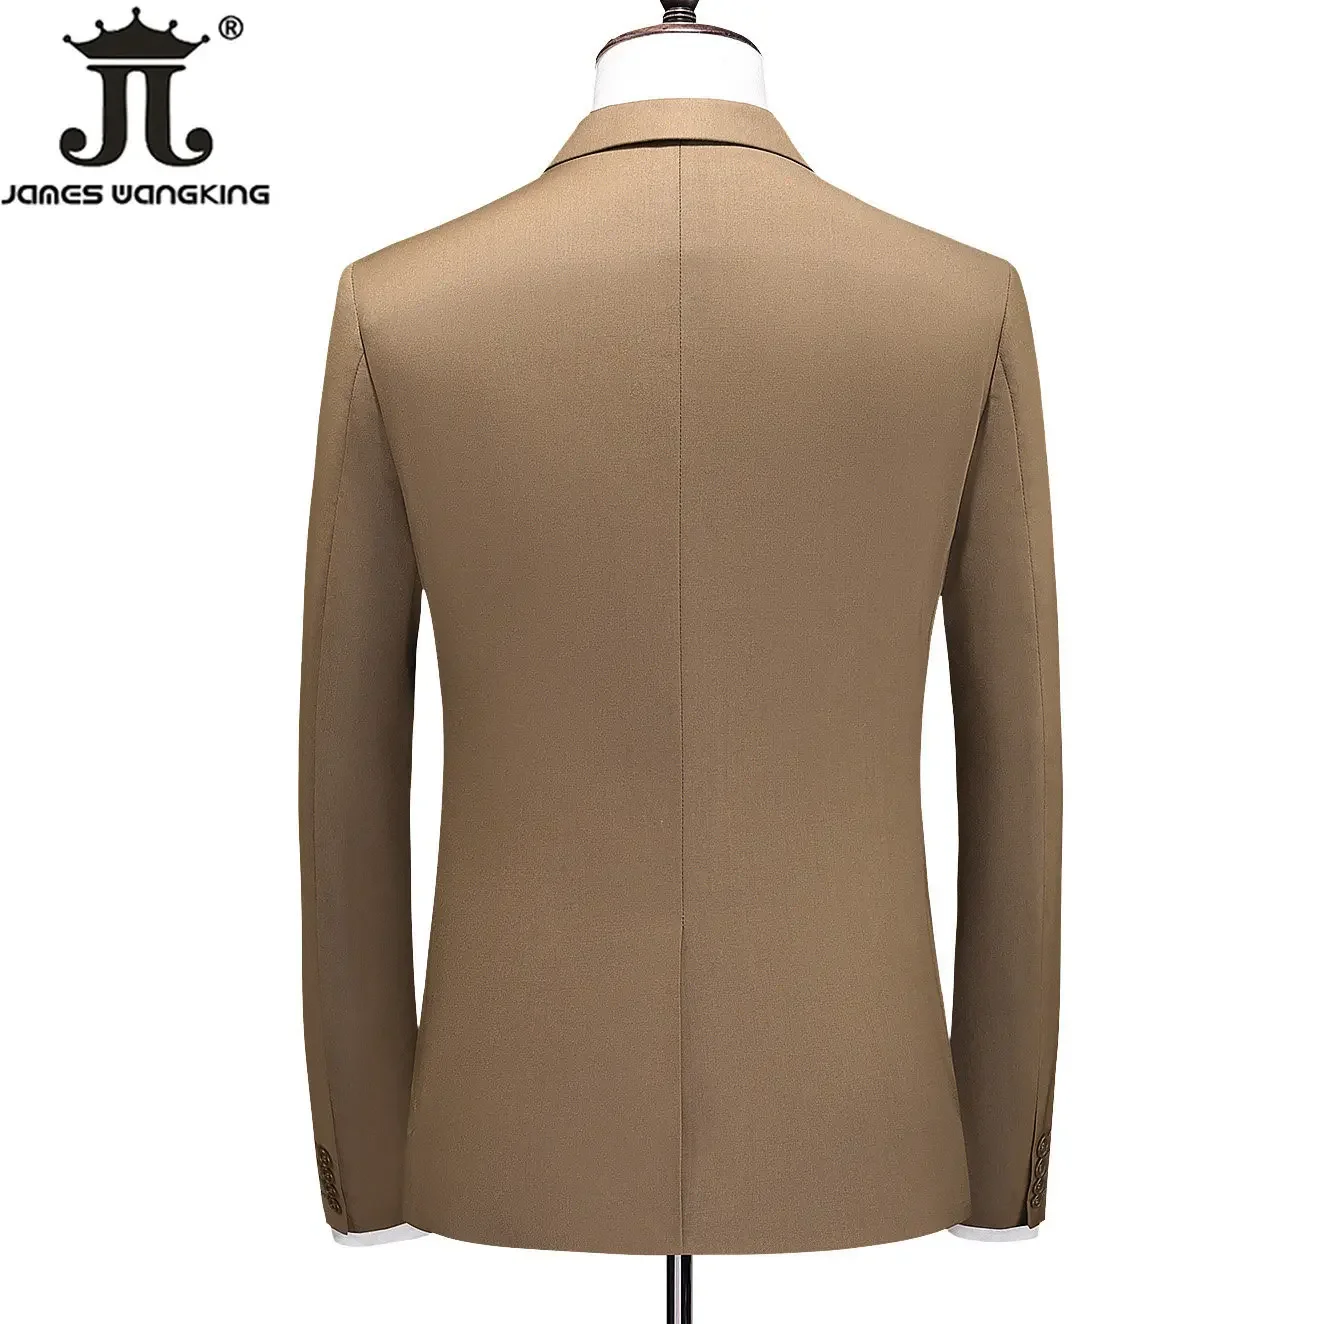 19 colori (pantaloni gilet giacca) abito formale da uomo d'affari in tinta unita di marca di fascia alta completo da tre pezzi abito da sposa sposo